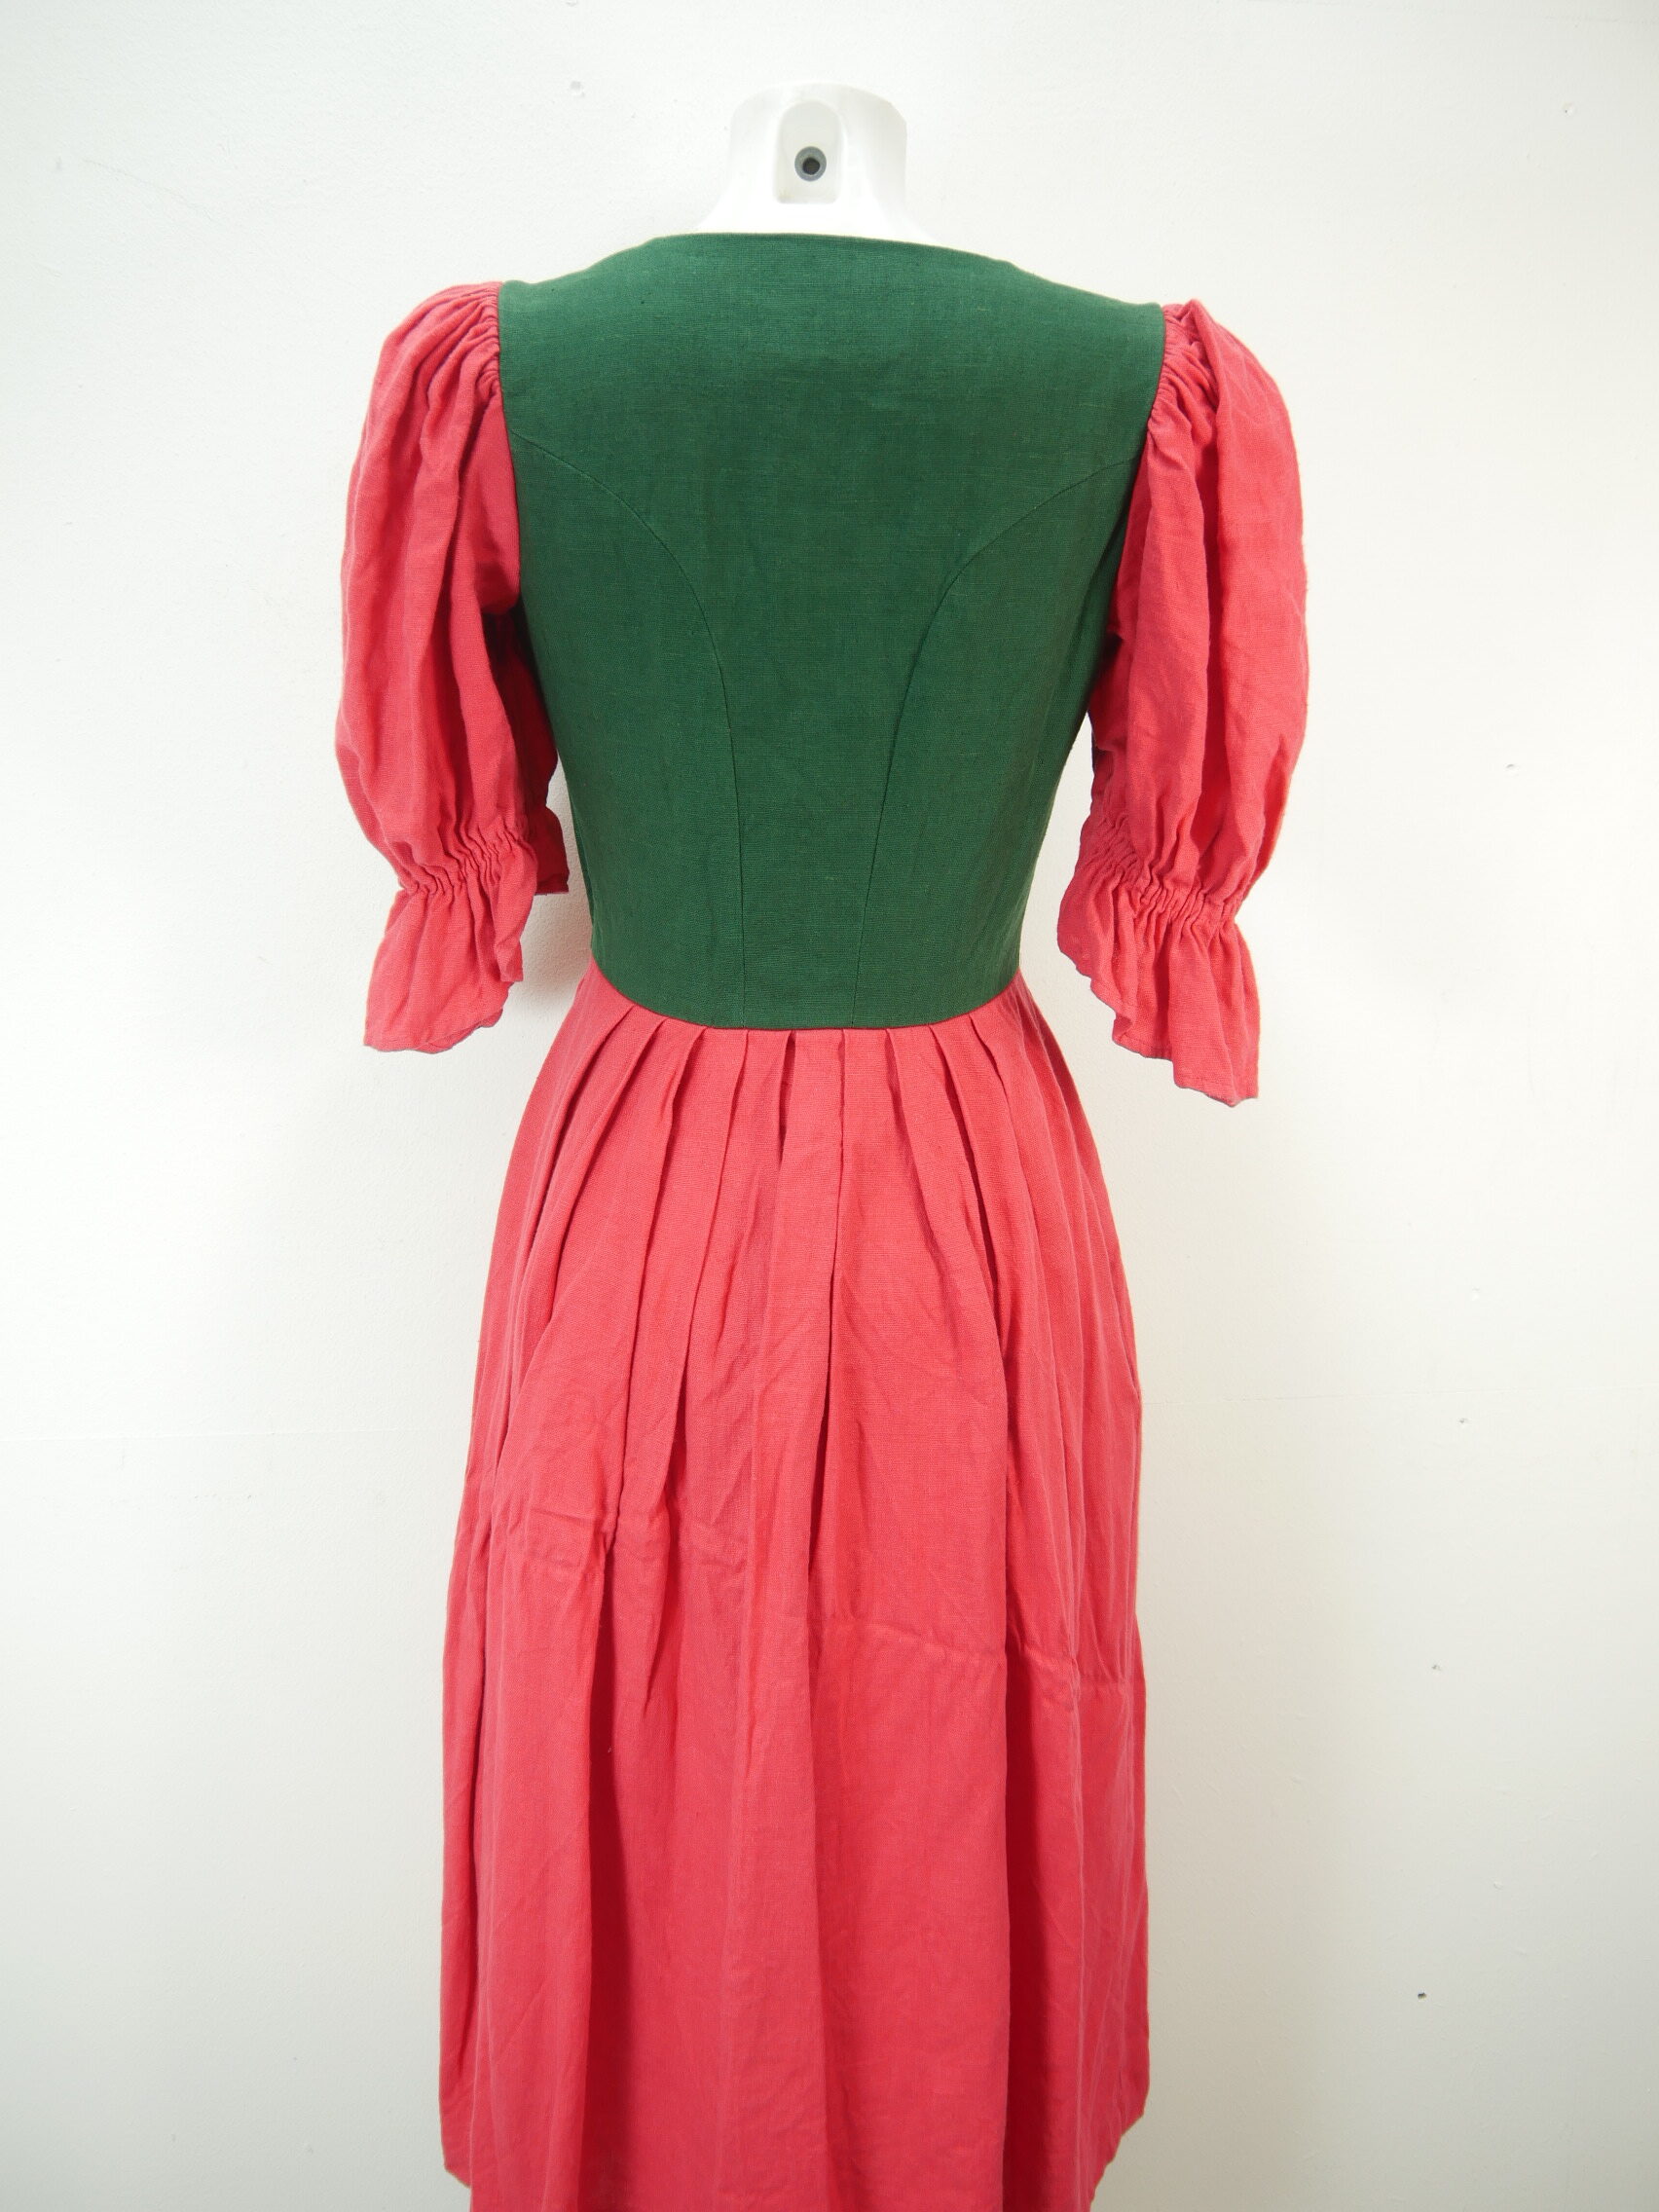 Sportalm Kitzbühel grün Landhaus rot Trachtenkleid phantastisches Kleid